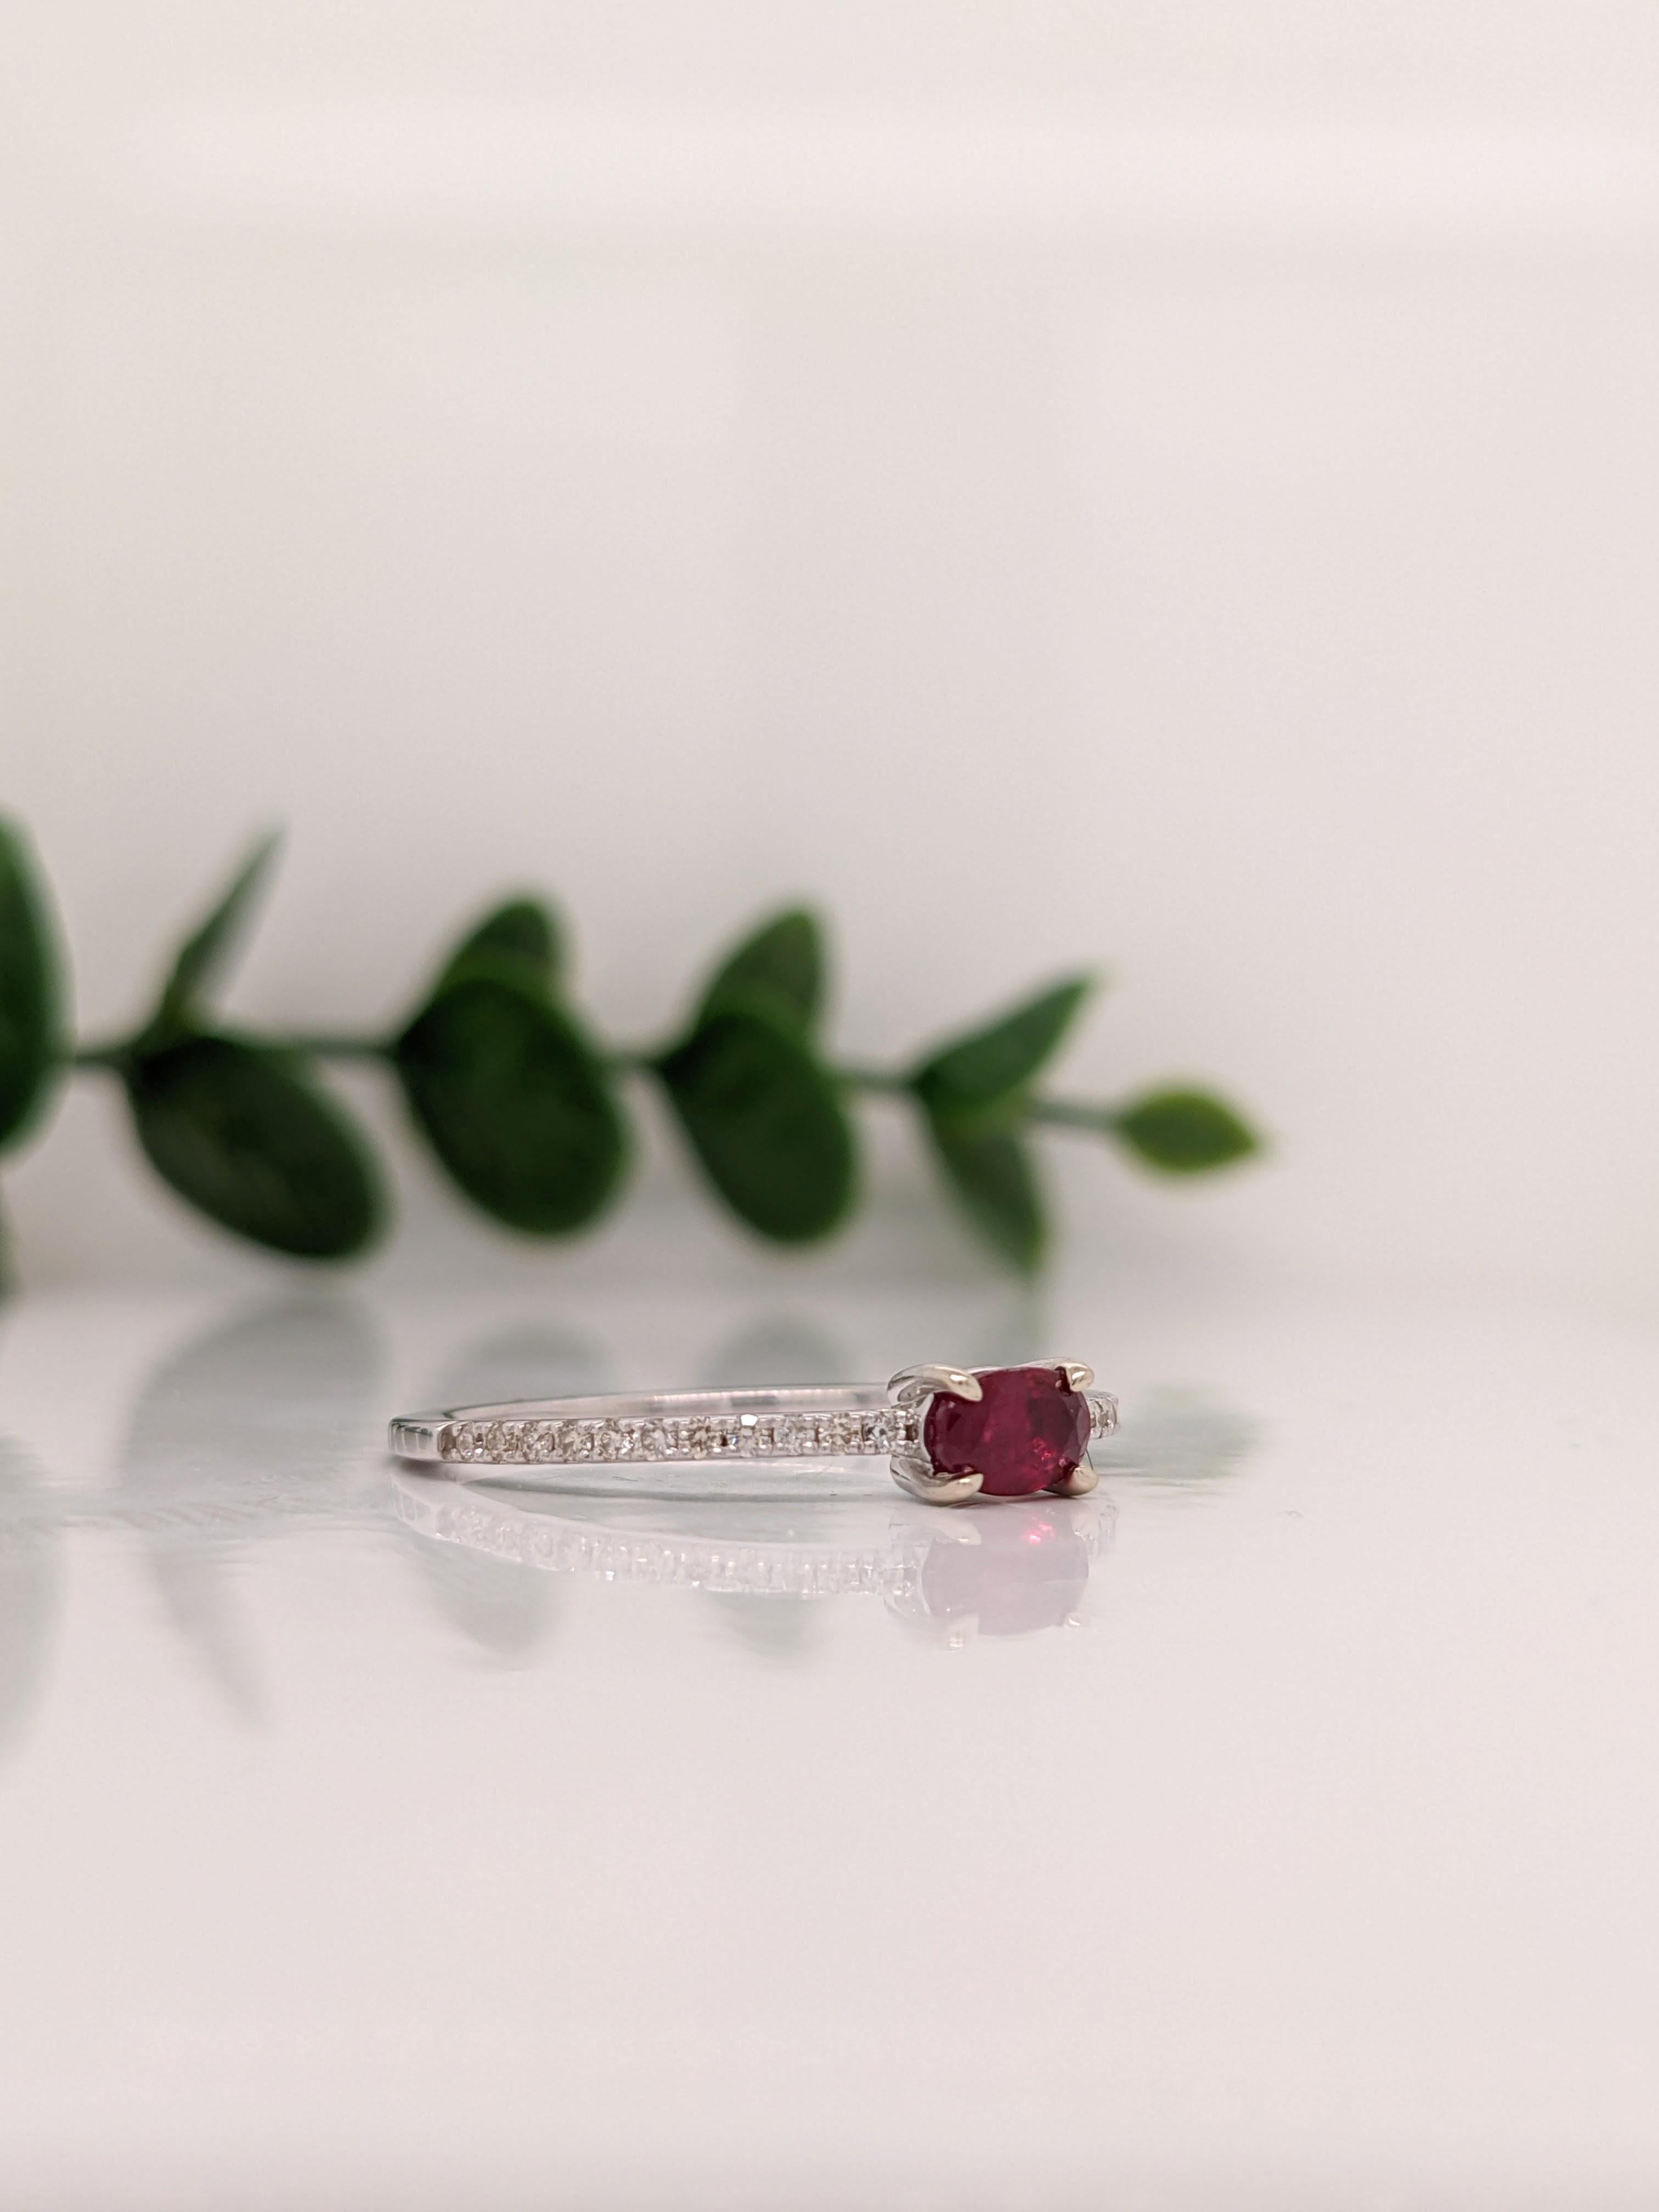 Dieser wunderschöne Ring zeigt einen funkelnden roten Rubin in 14-karätigem Weißgold mit natürlichen Diamantakzenten. Ein zartes Ringdesign, das sich perfekt für eine auffällige Verlobung oder einen Jahrestag eignet. Dieser Ring ist auch ein schöner